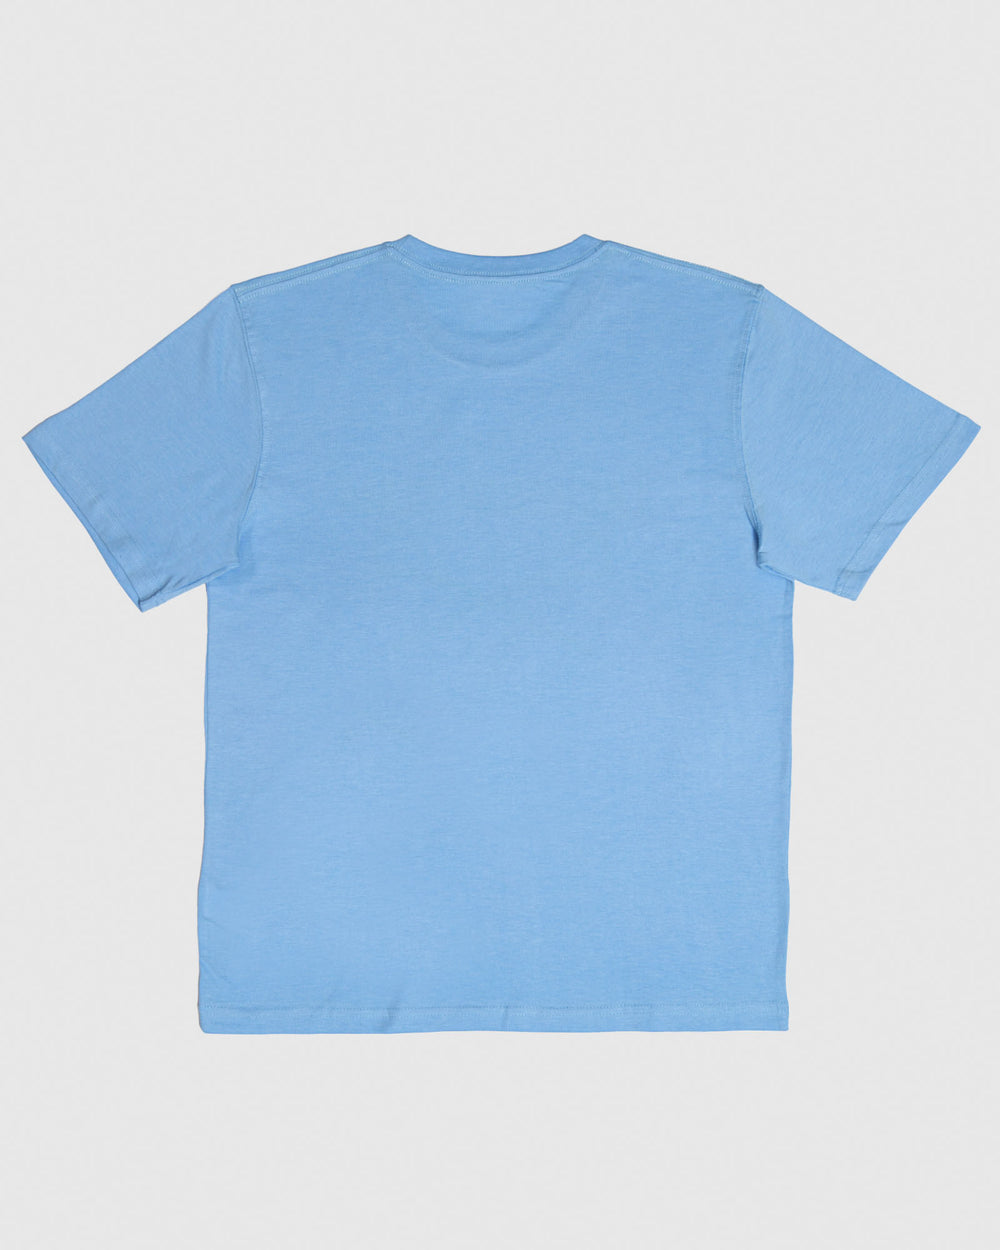 Back of carolina blue t-shirt